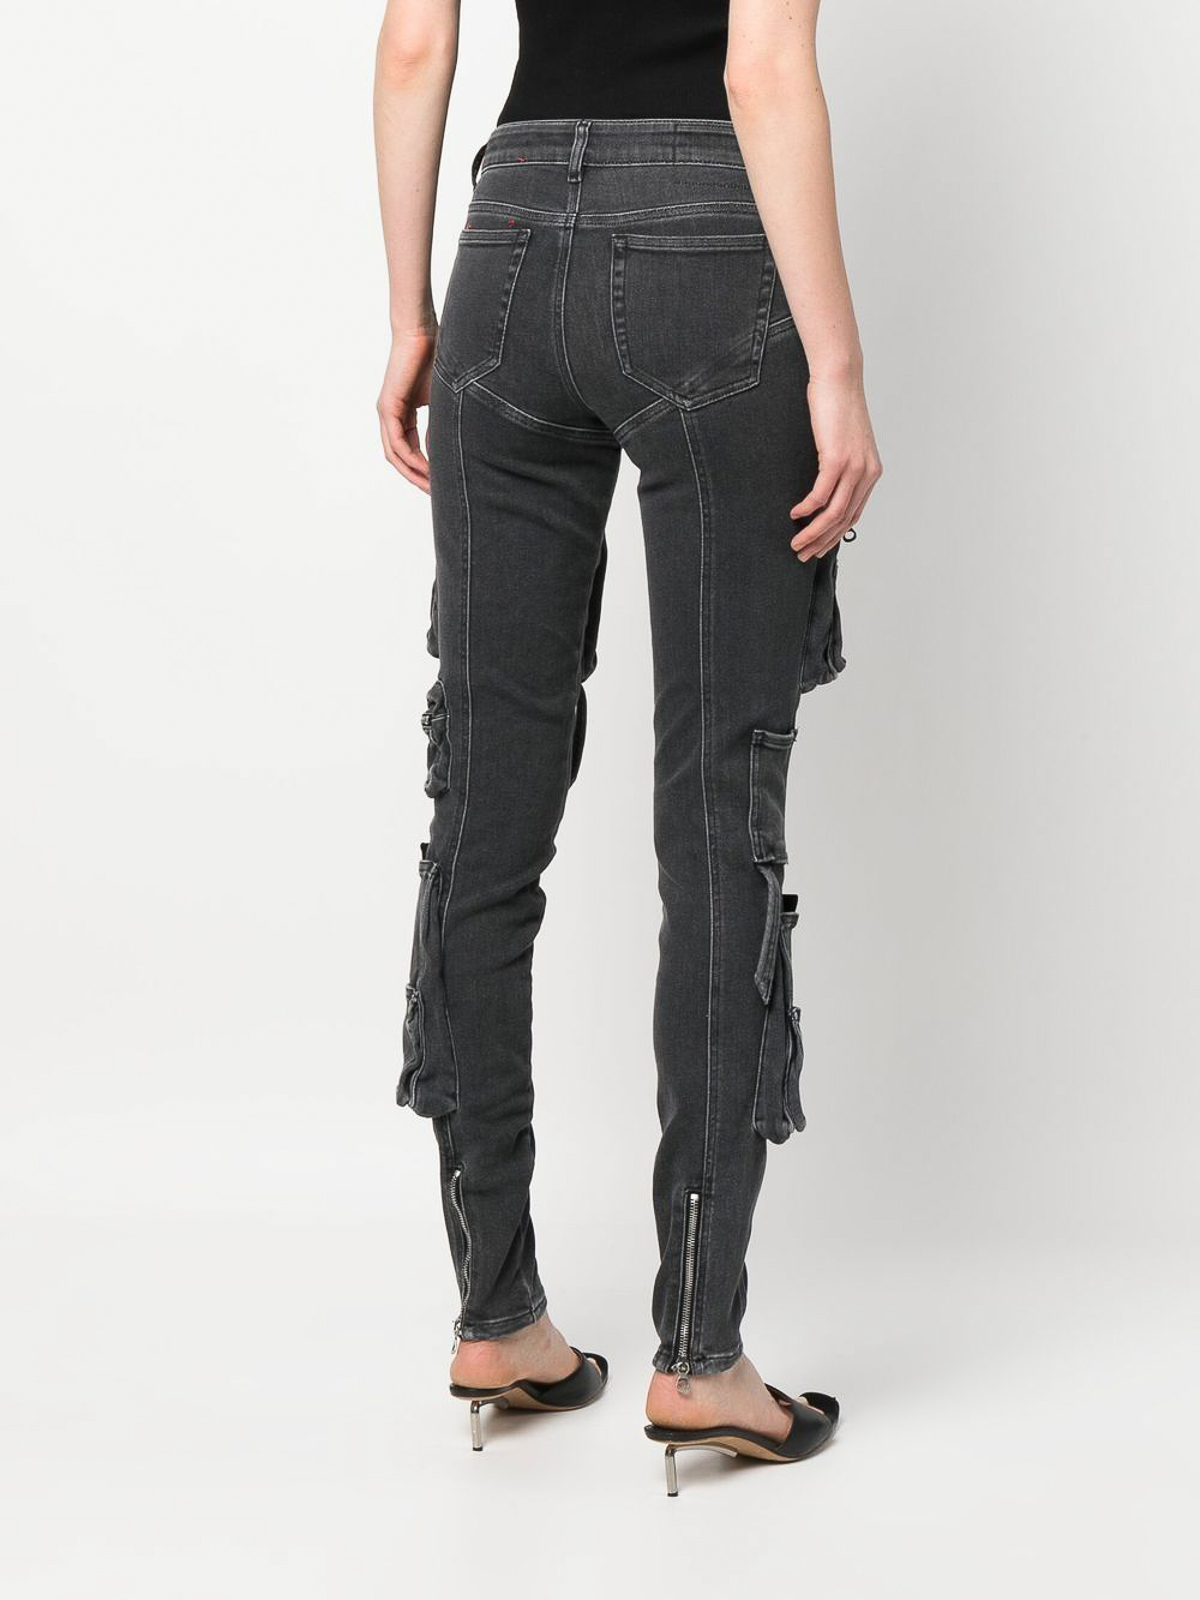 Commotie verkoper Ontwaken Skinny jeans Diesel - Slandy patch-pockets skinny jeans - A1060009F2702